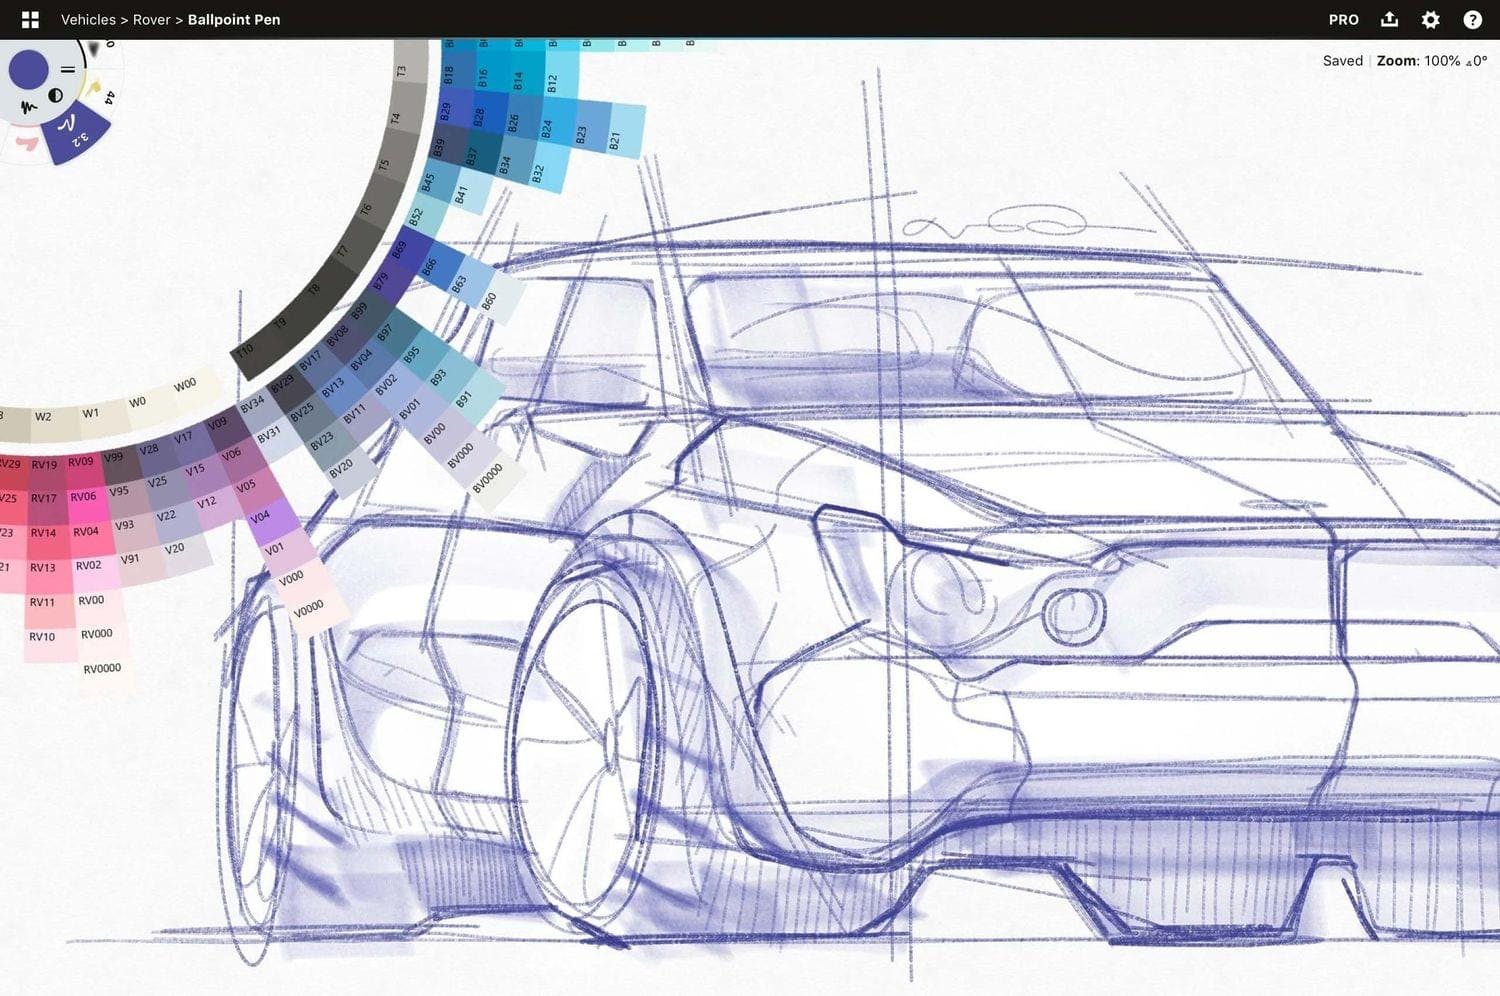 Concepts Car sketch showing color wheel